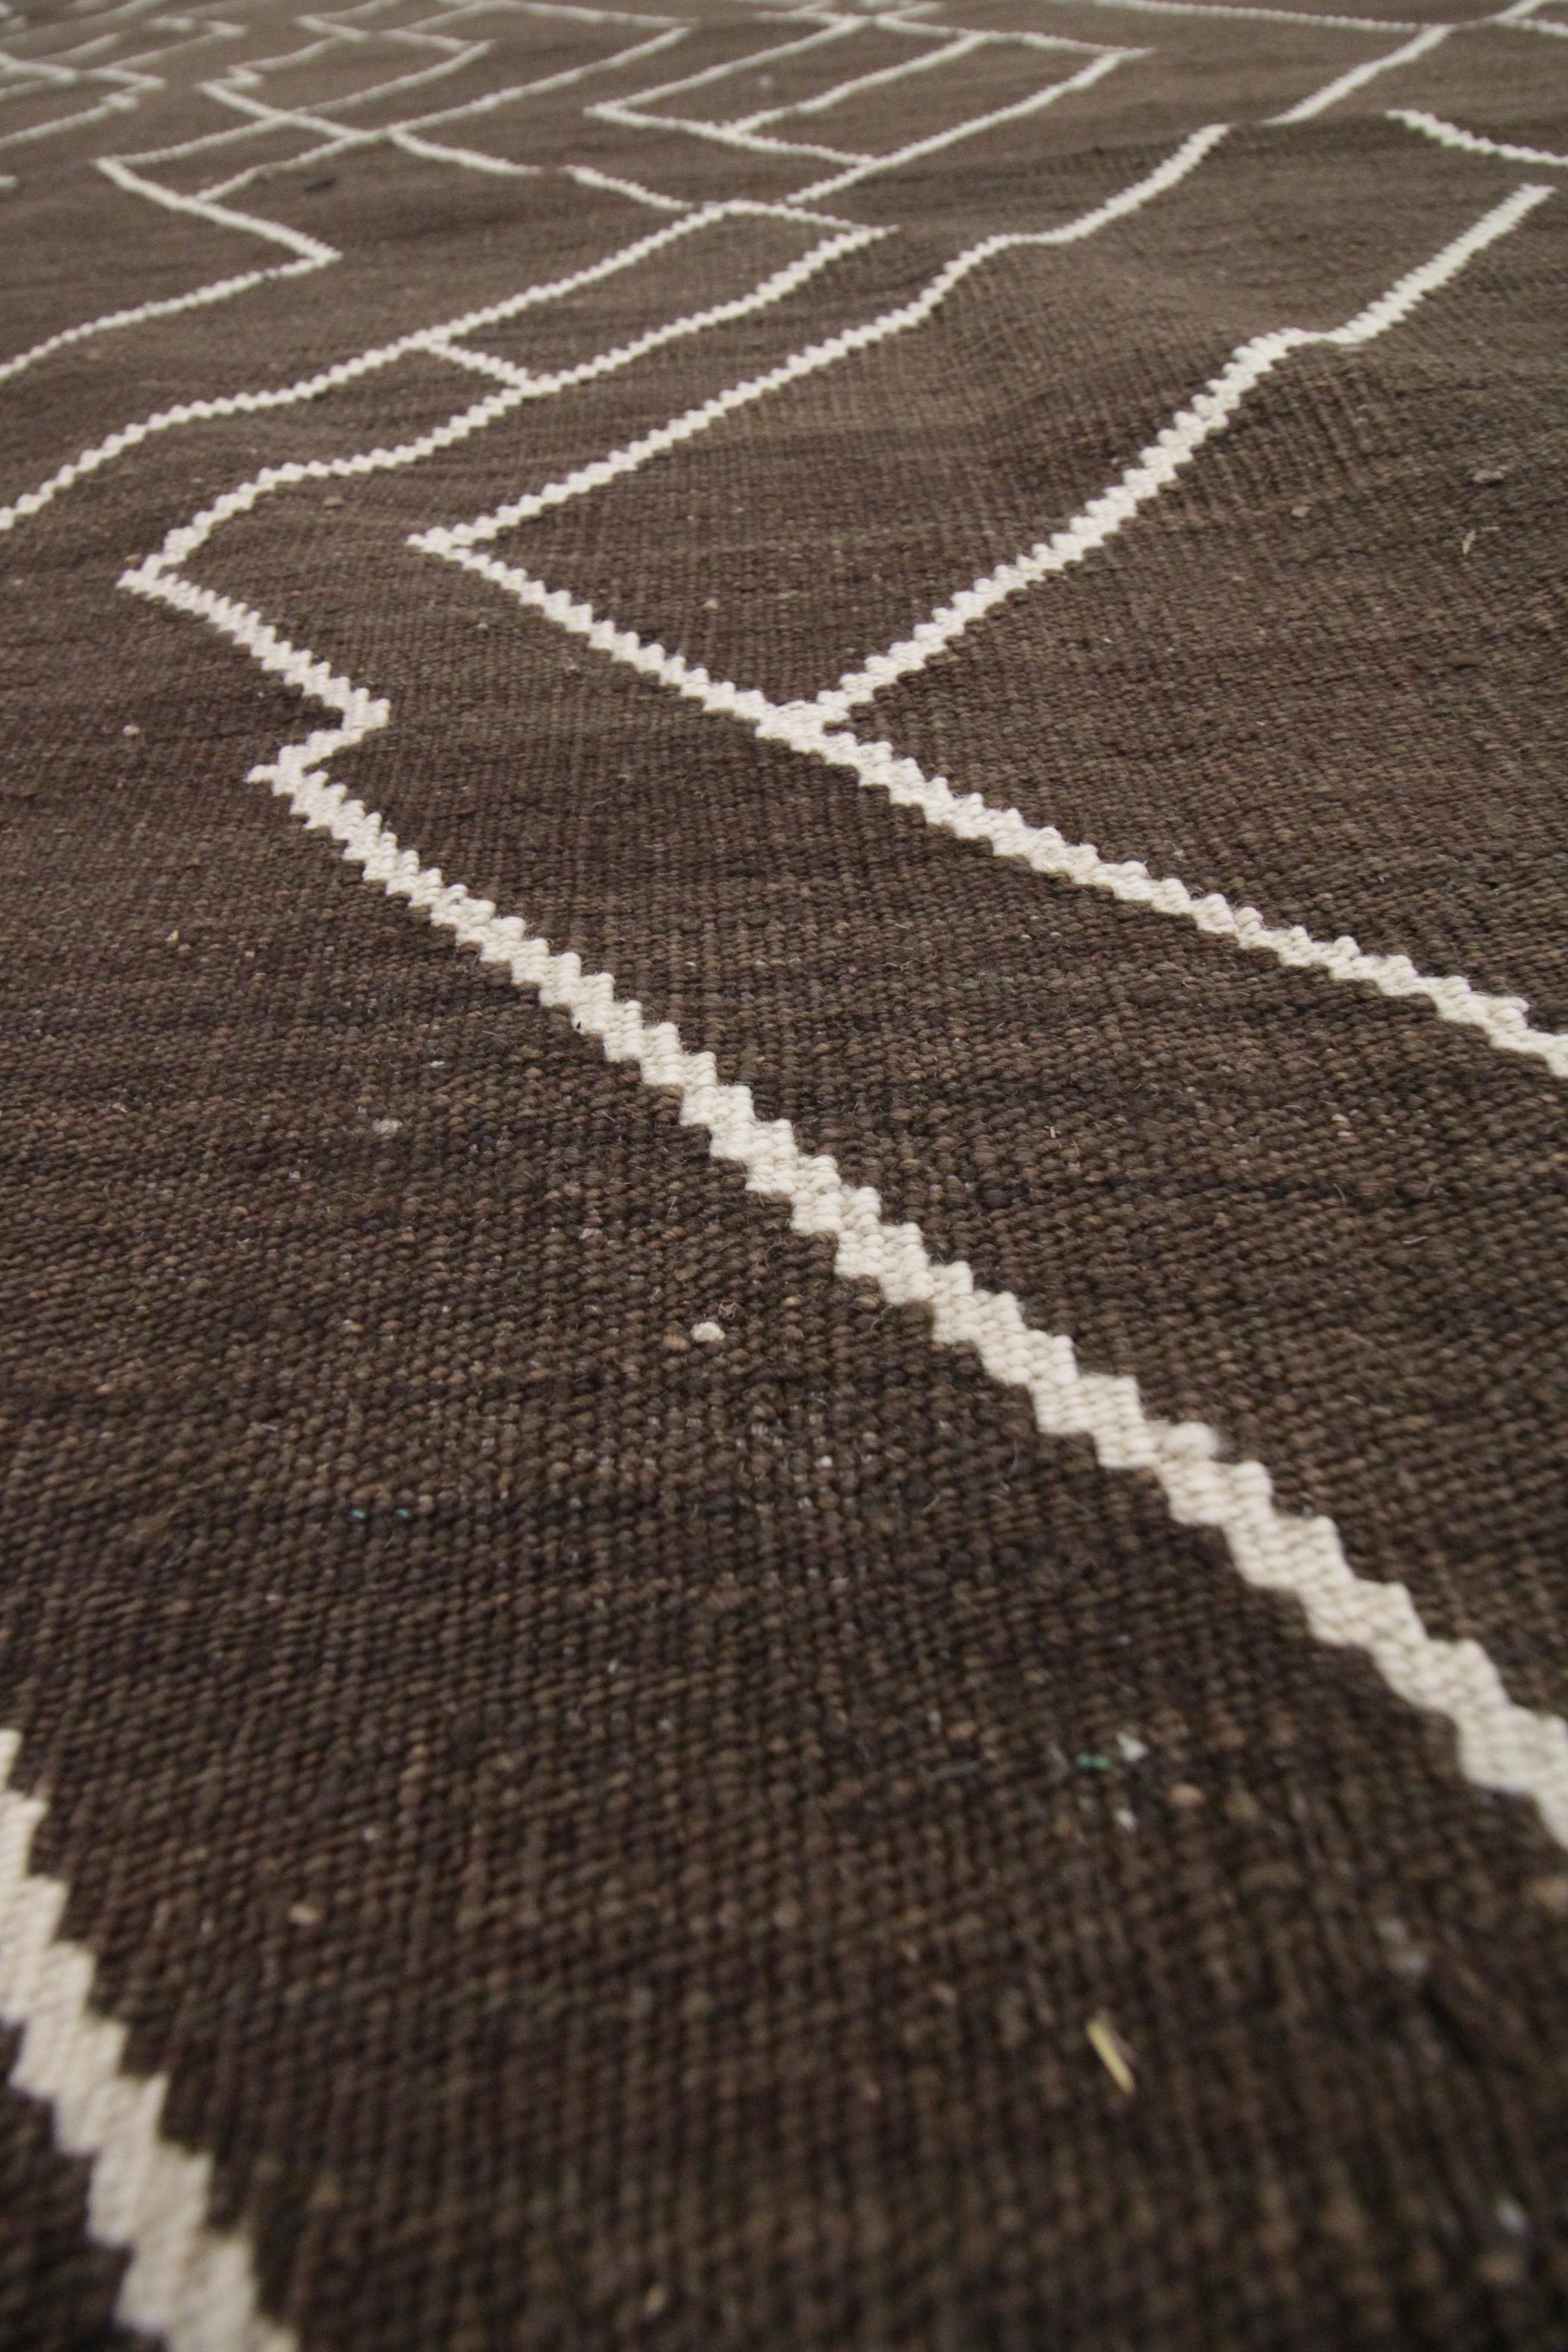 Ce tapis moderne en laine est un The Modern Scandinavian Rug & Kilim tissé à plat, fabriqué en Afghanistan. Les motifs présentés sont tissés de manière symétrique et semblent évoquer un paysage montagneux sous certains angles - les motifs linéaires